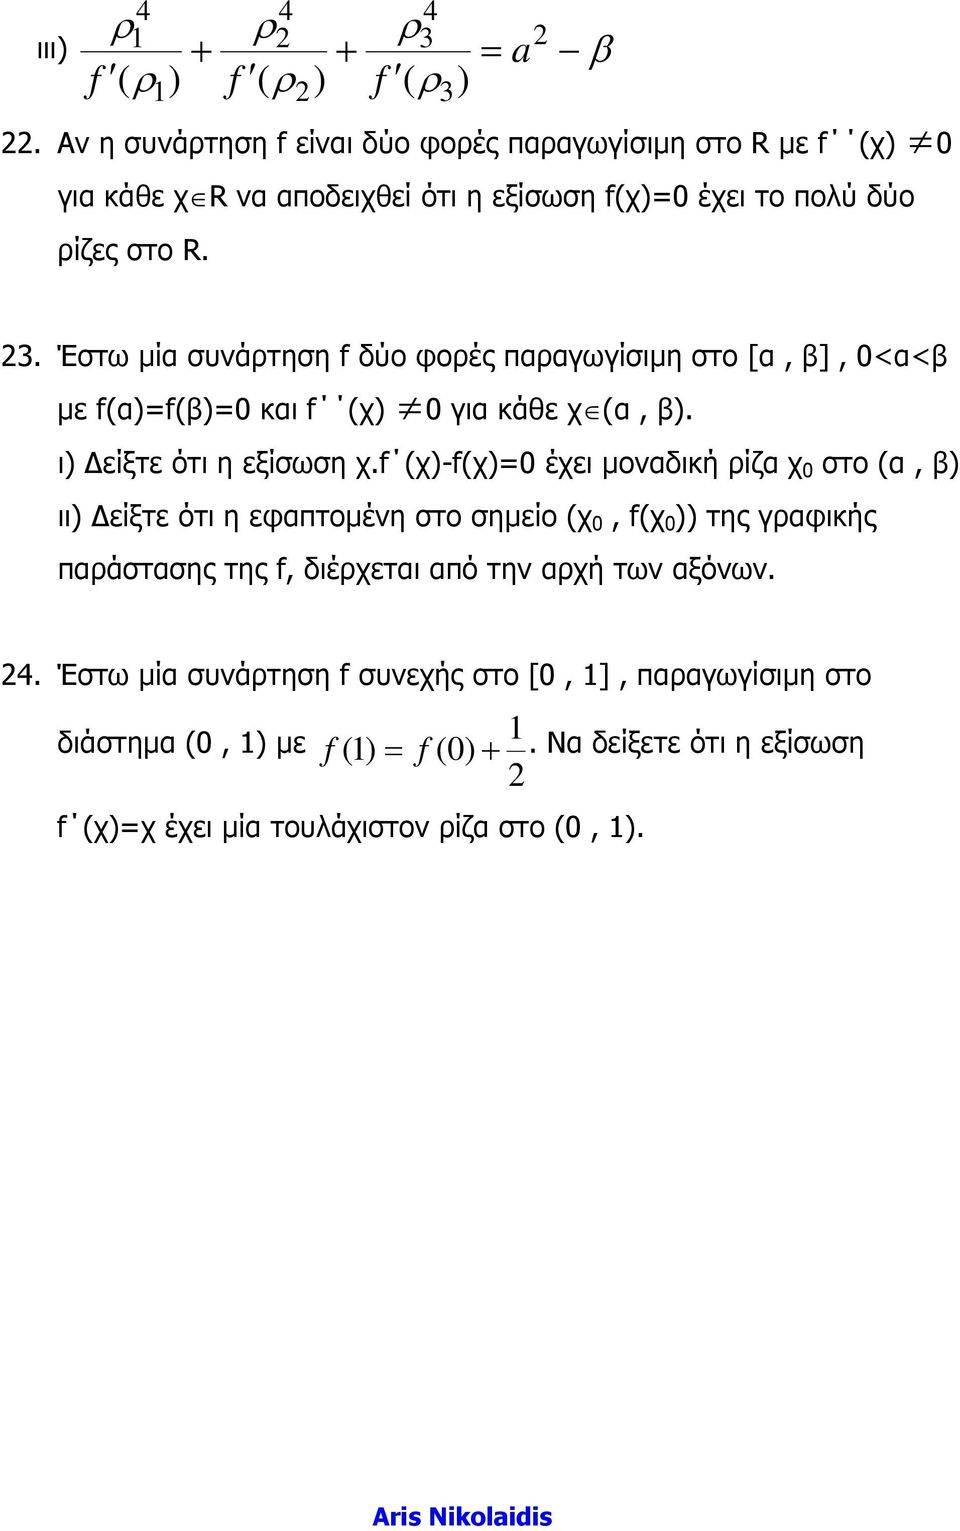 Έστω µία συνάτηση f δύο φοές πααγωγίσιµη στο [α, β], 0<α<β µε f(α)=f(β)=0 και f (χ) 0 για κάθε χ (α, β). ι) είξτε ότι η εξίσωση χ.